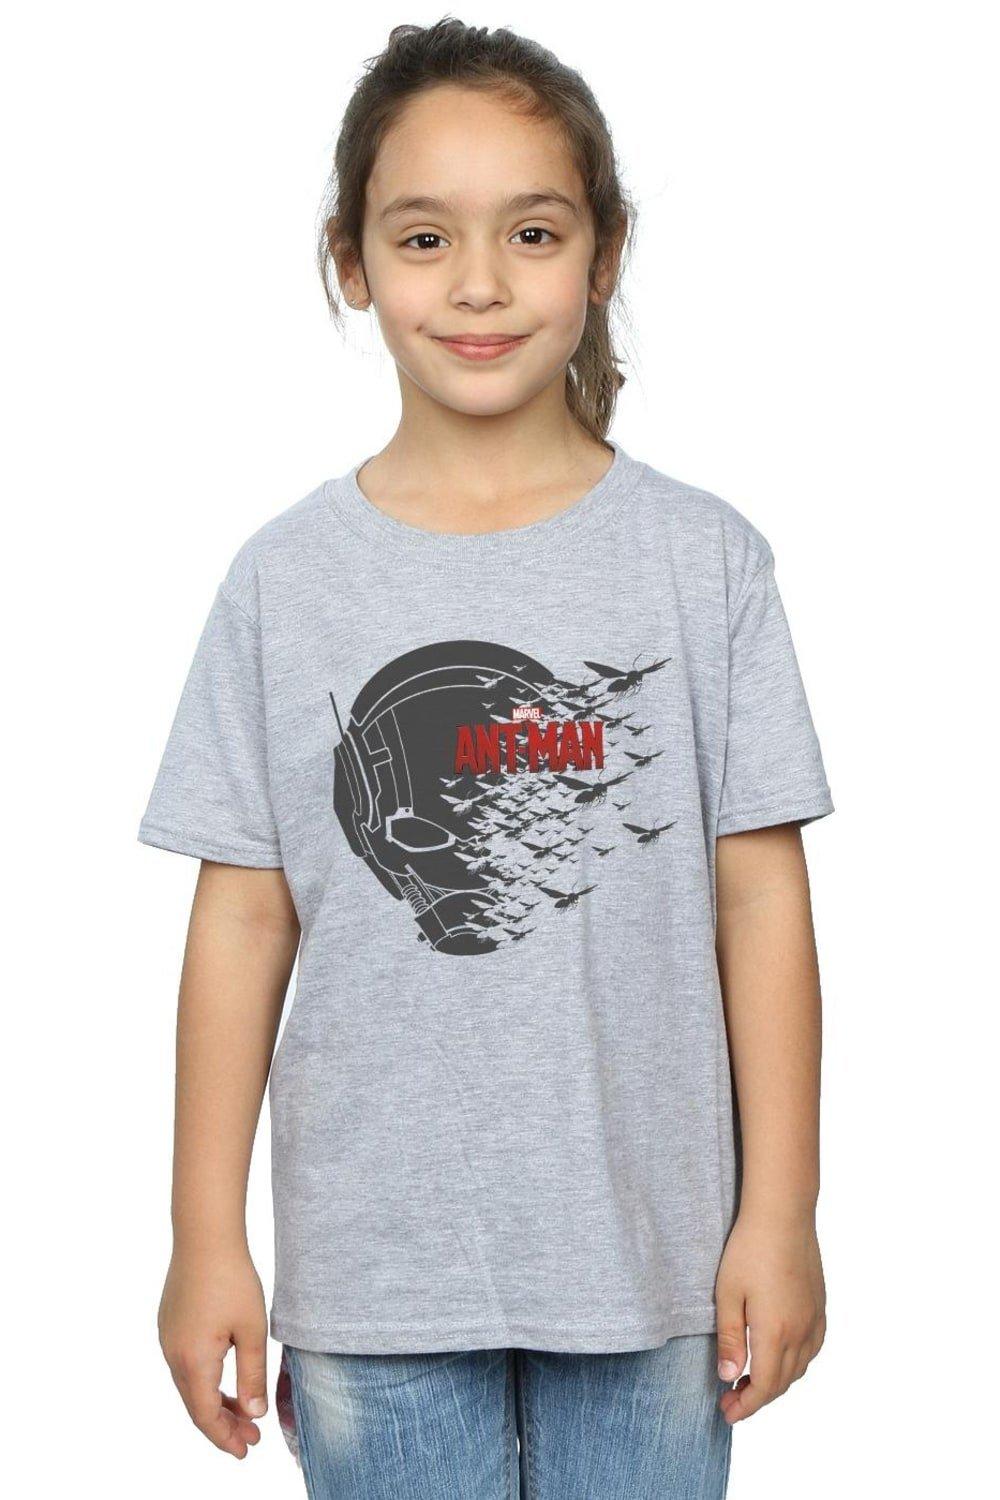 Хлопковая футболка с летающим шлемом «Человек-муравей» Marvel, серый